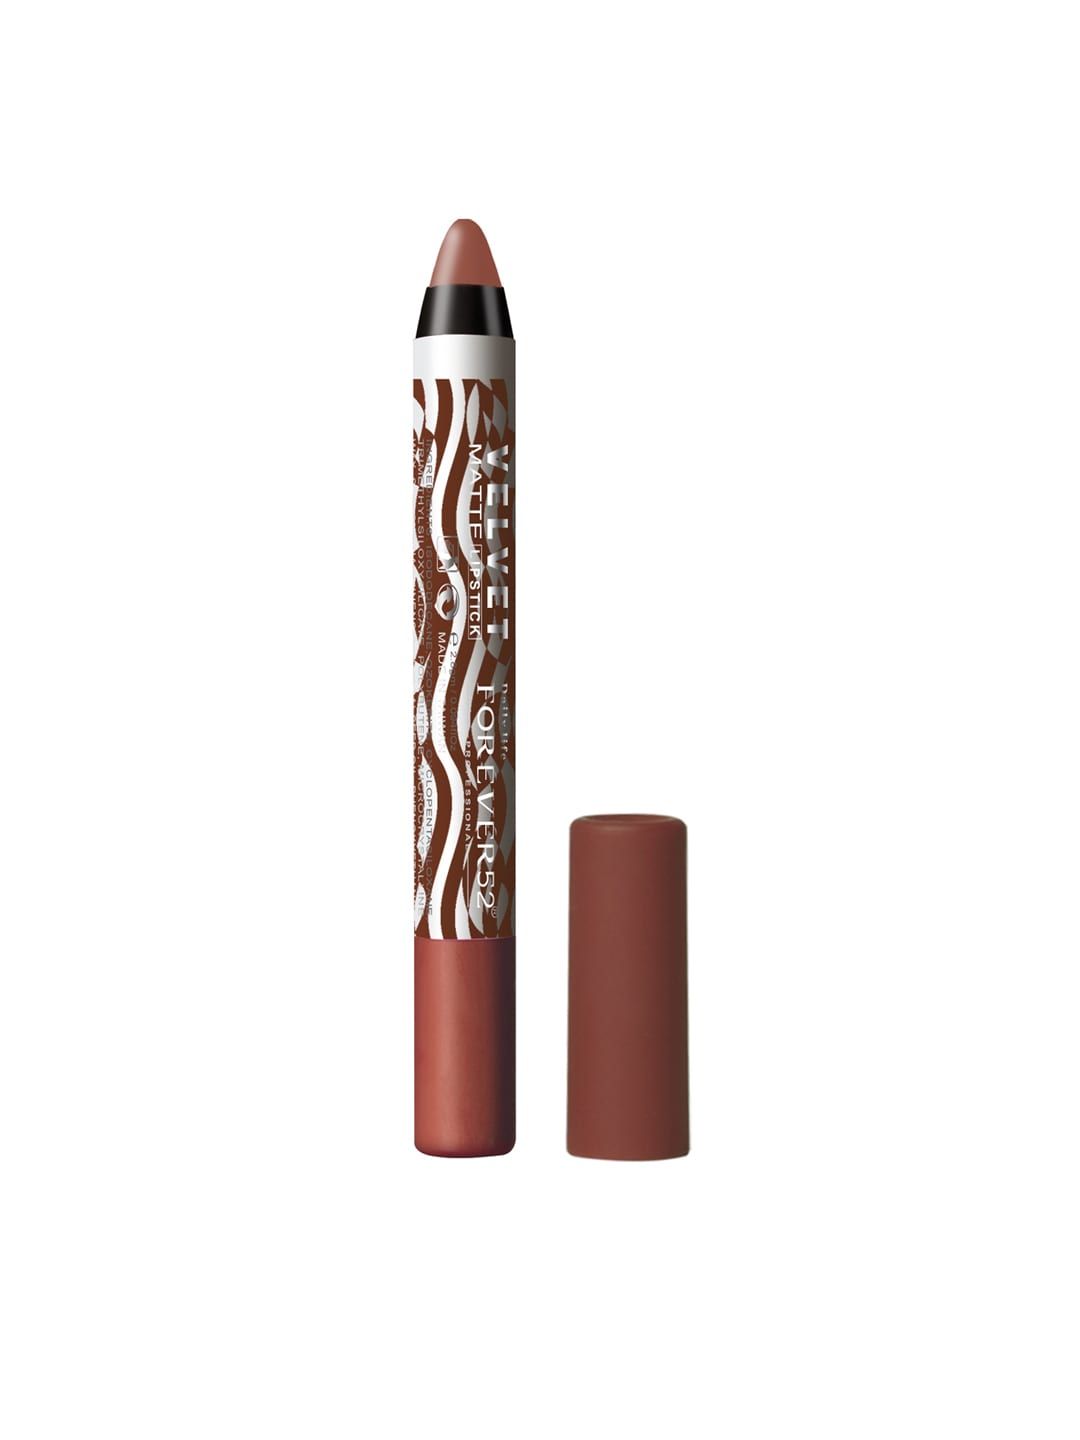 Daily Life Forever52 Brown Velvet Matte Lipstick 2.8g Price in India